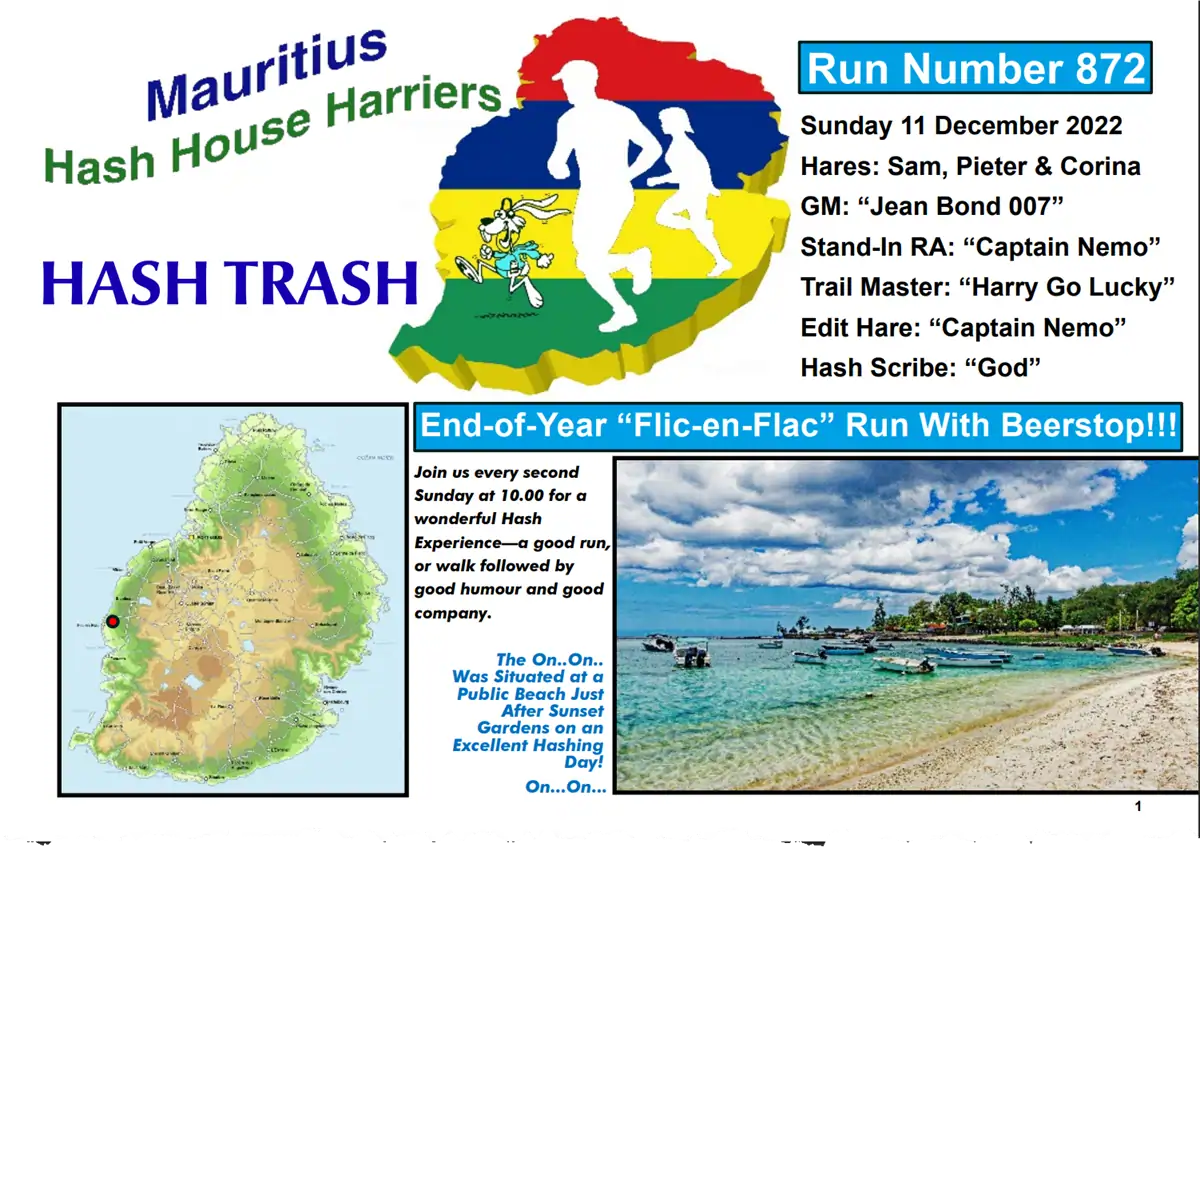 Hash Trash 872 Future Image Mauritius